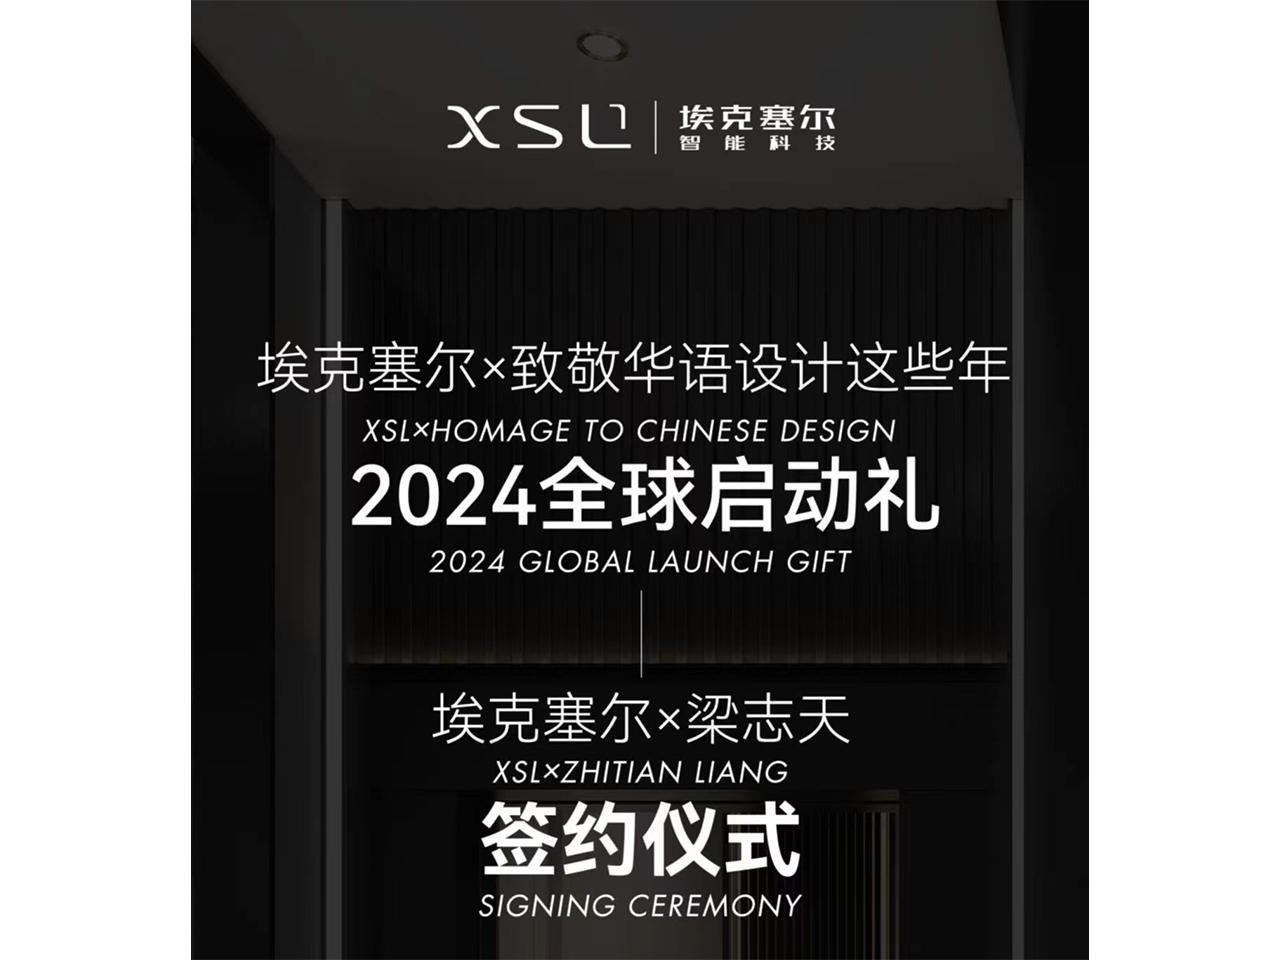 تكريم XSL للتصميم الصيني على مر السنين